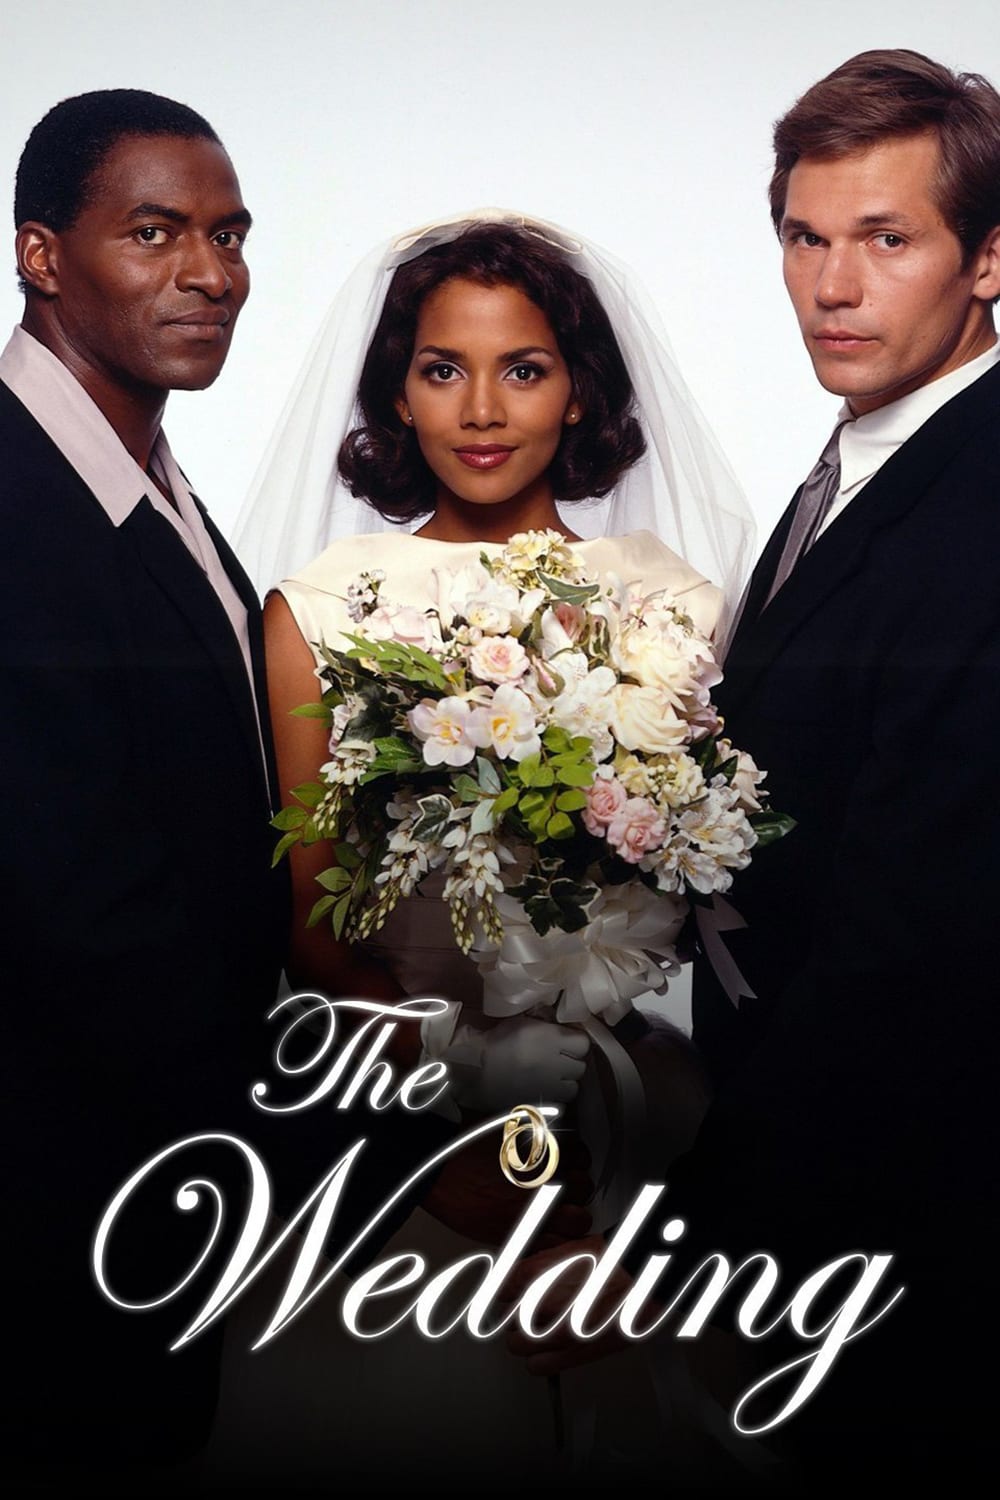 Plakat von "The Wedding"